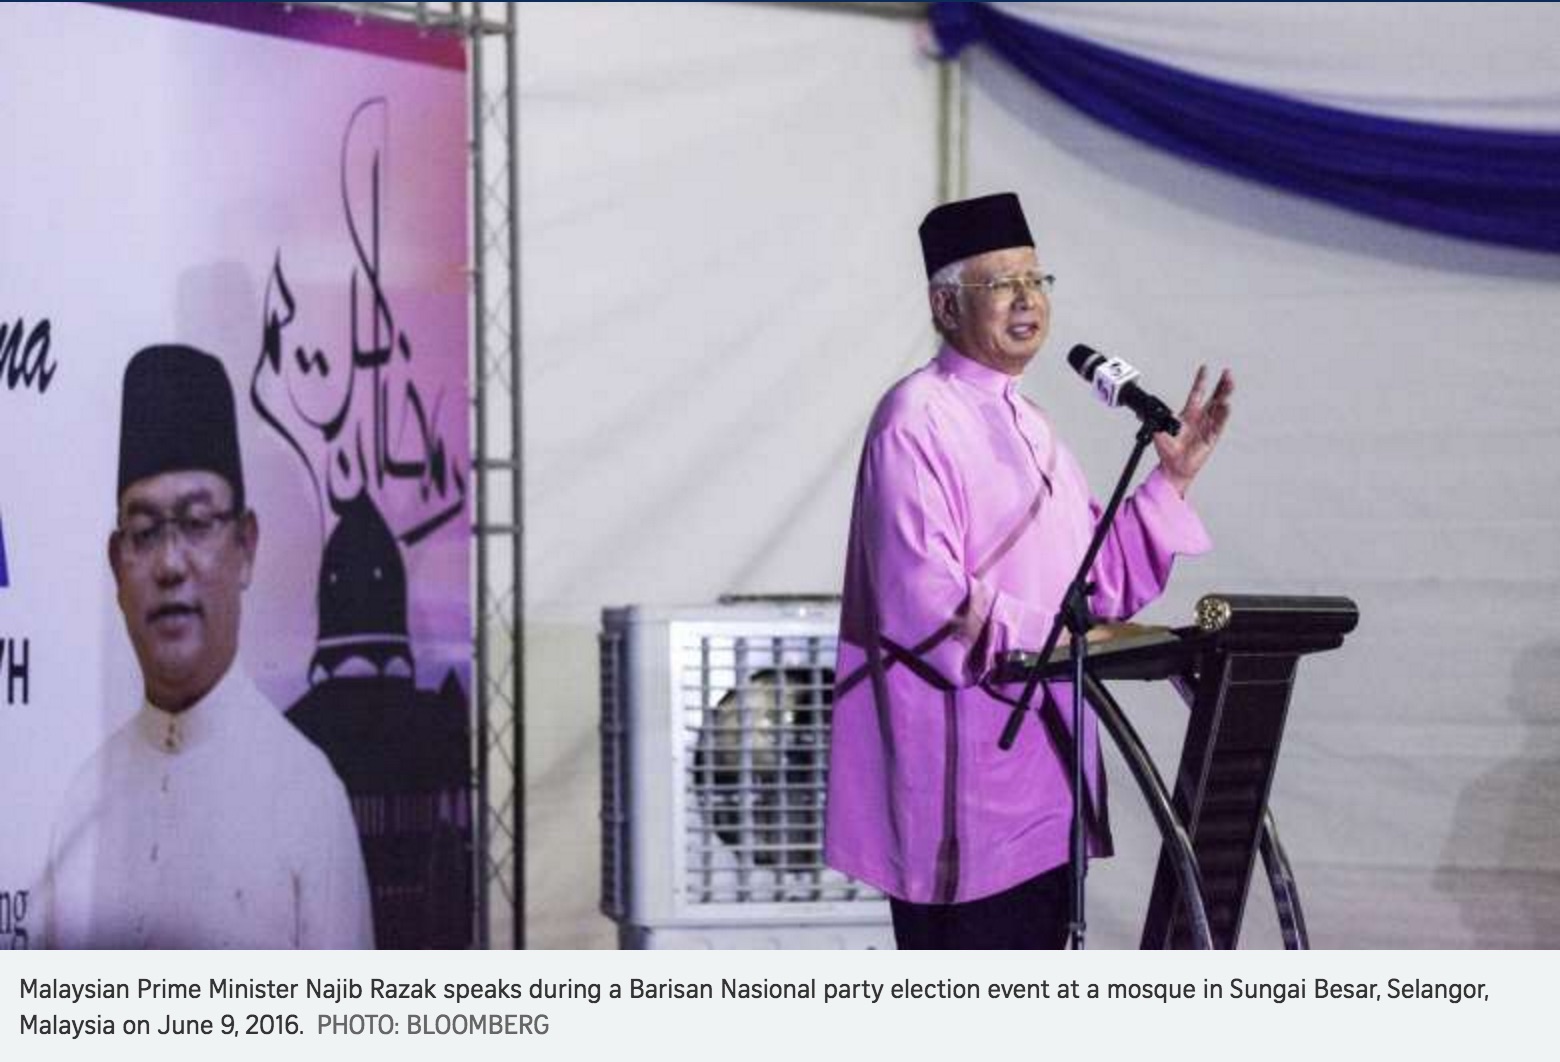 Le Premier ministre malaisien veut créer un cadre juridique aux dons politiques afin d'éviter une répétition du scandale du 1MDB. Copie d'écran du Straits Times, le 26 octobre 2016.